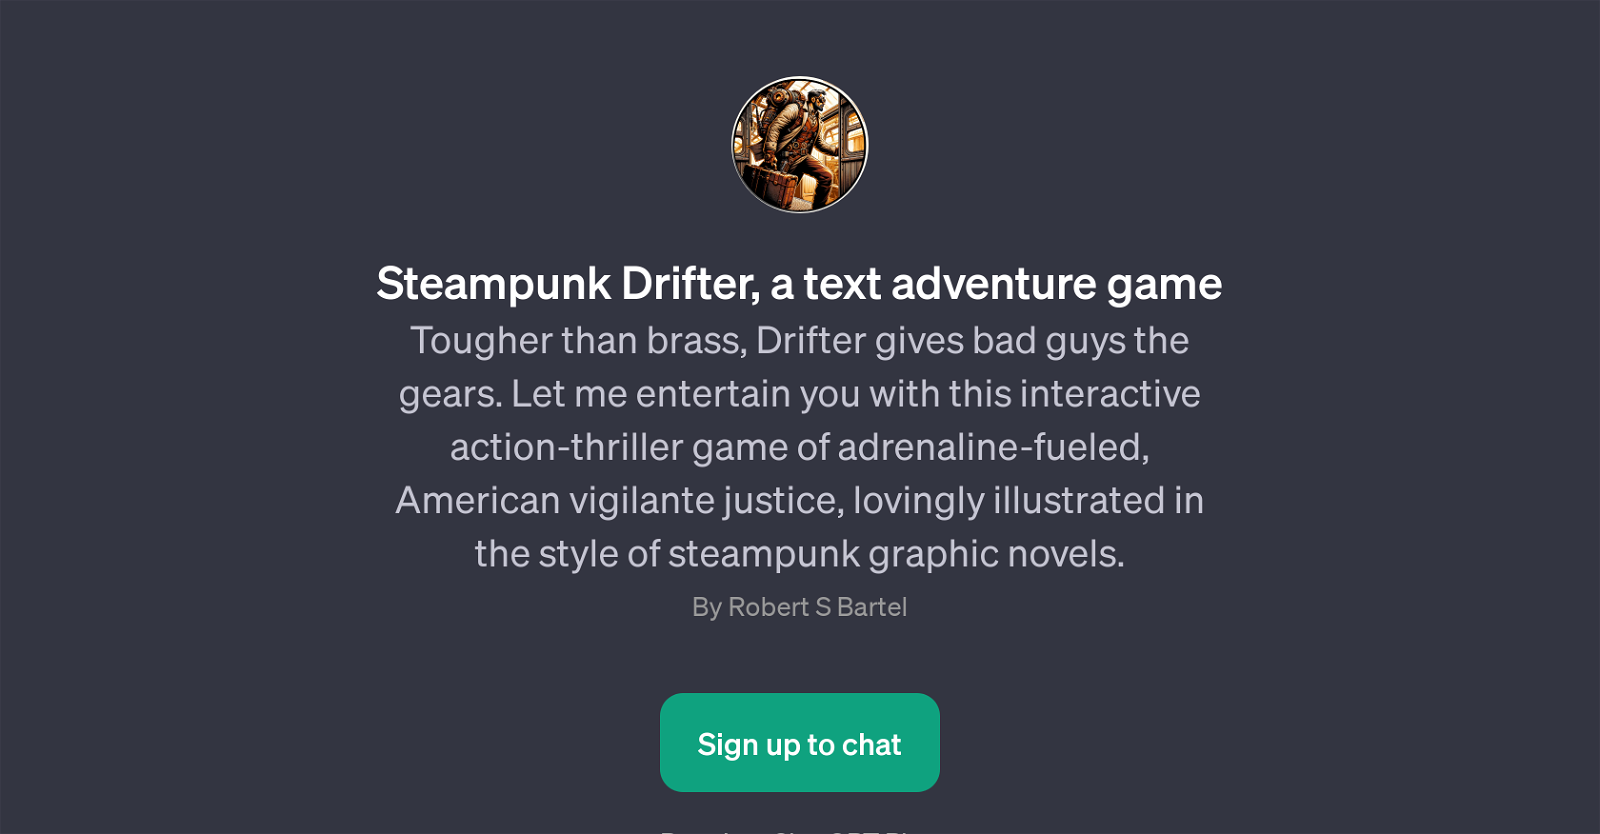 Steampunk Drifter website